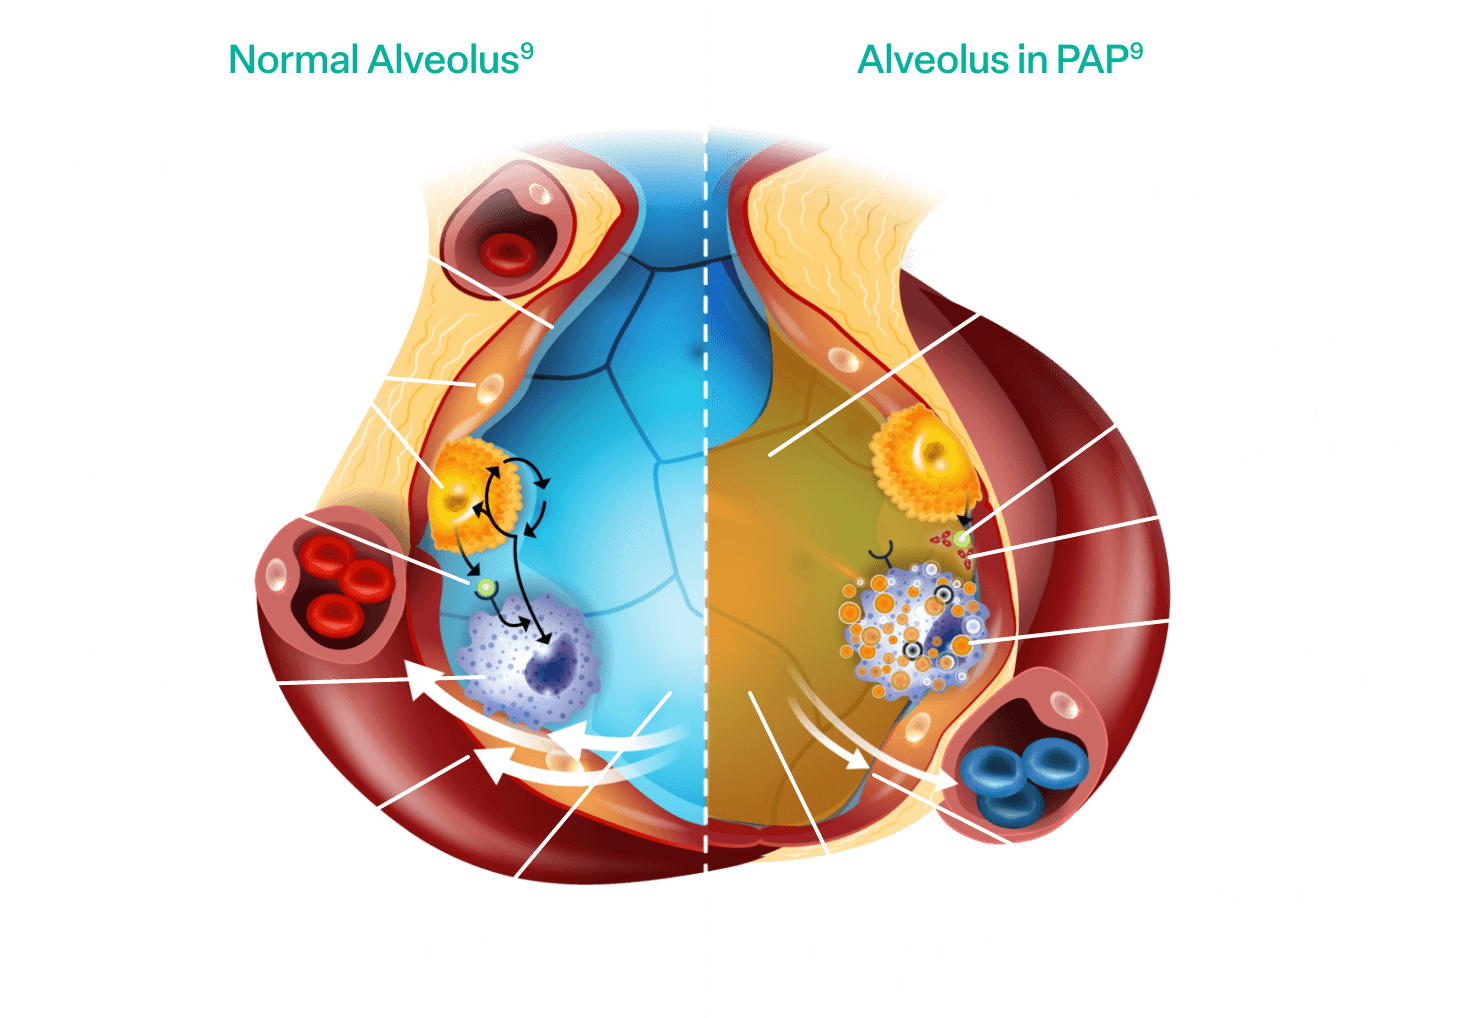 Normal alveolus vs alveolus with aPAP